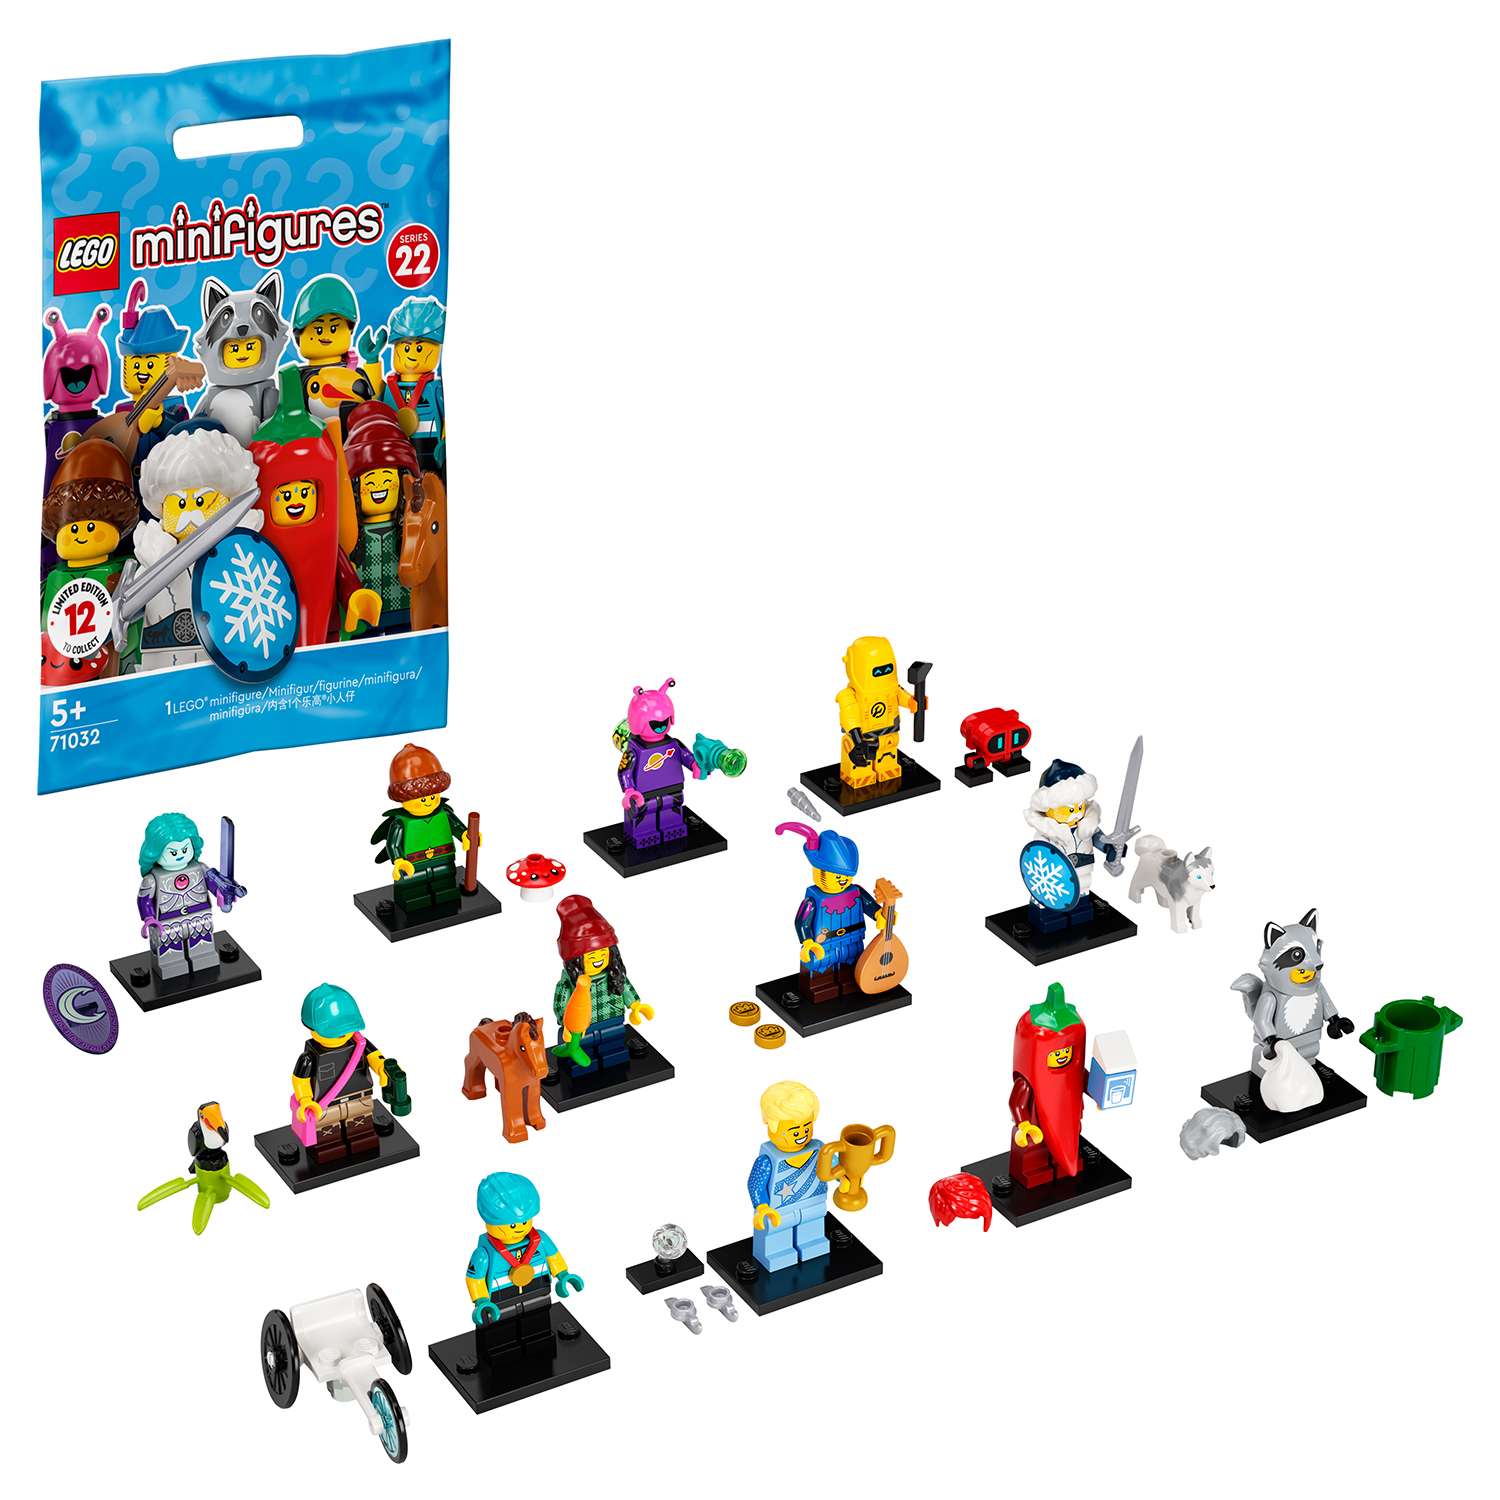 Конструктор LEGO Minifigures tbd Minifigures Series 22 2022 в непрозрачной упаковке (Сюрприз)71032 - фото 1